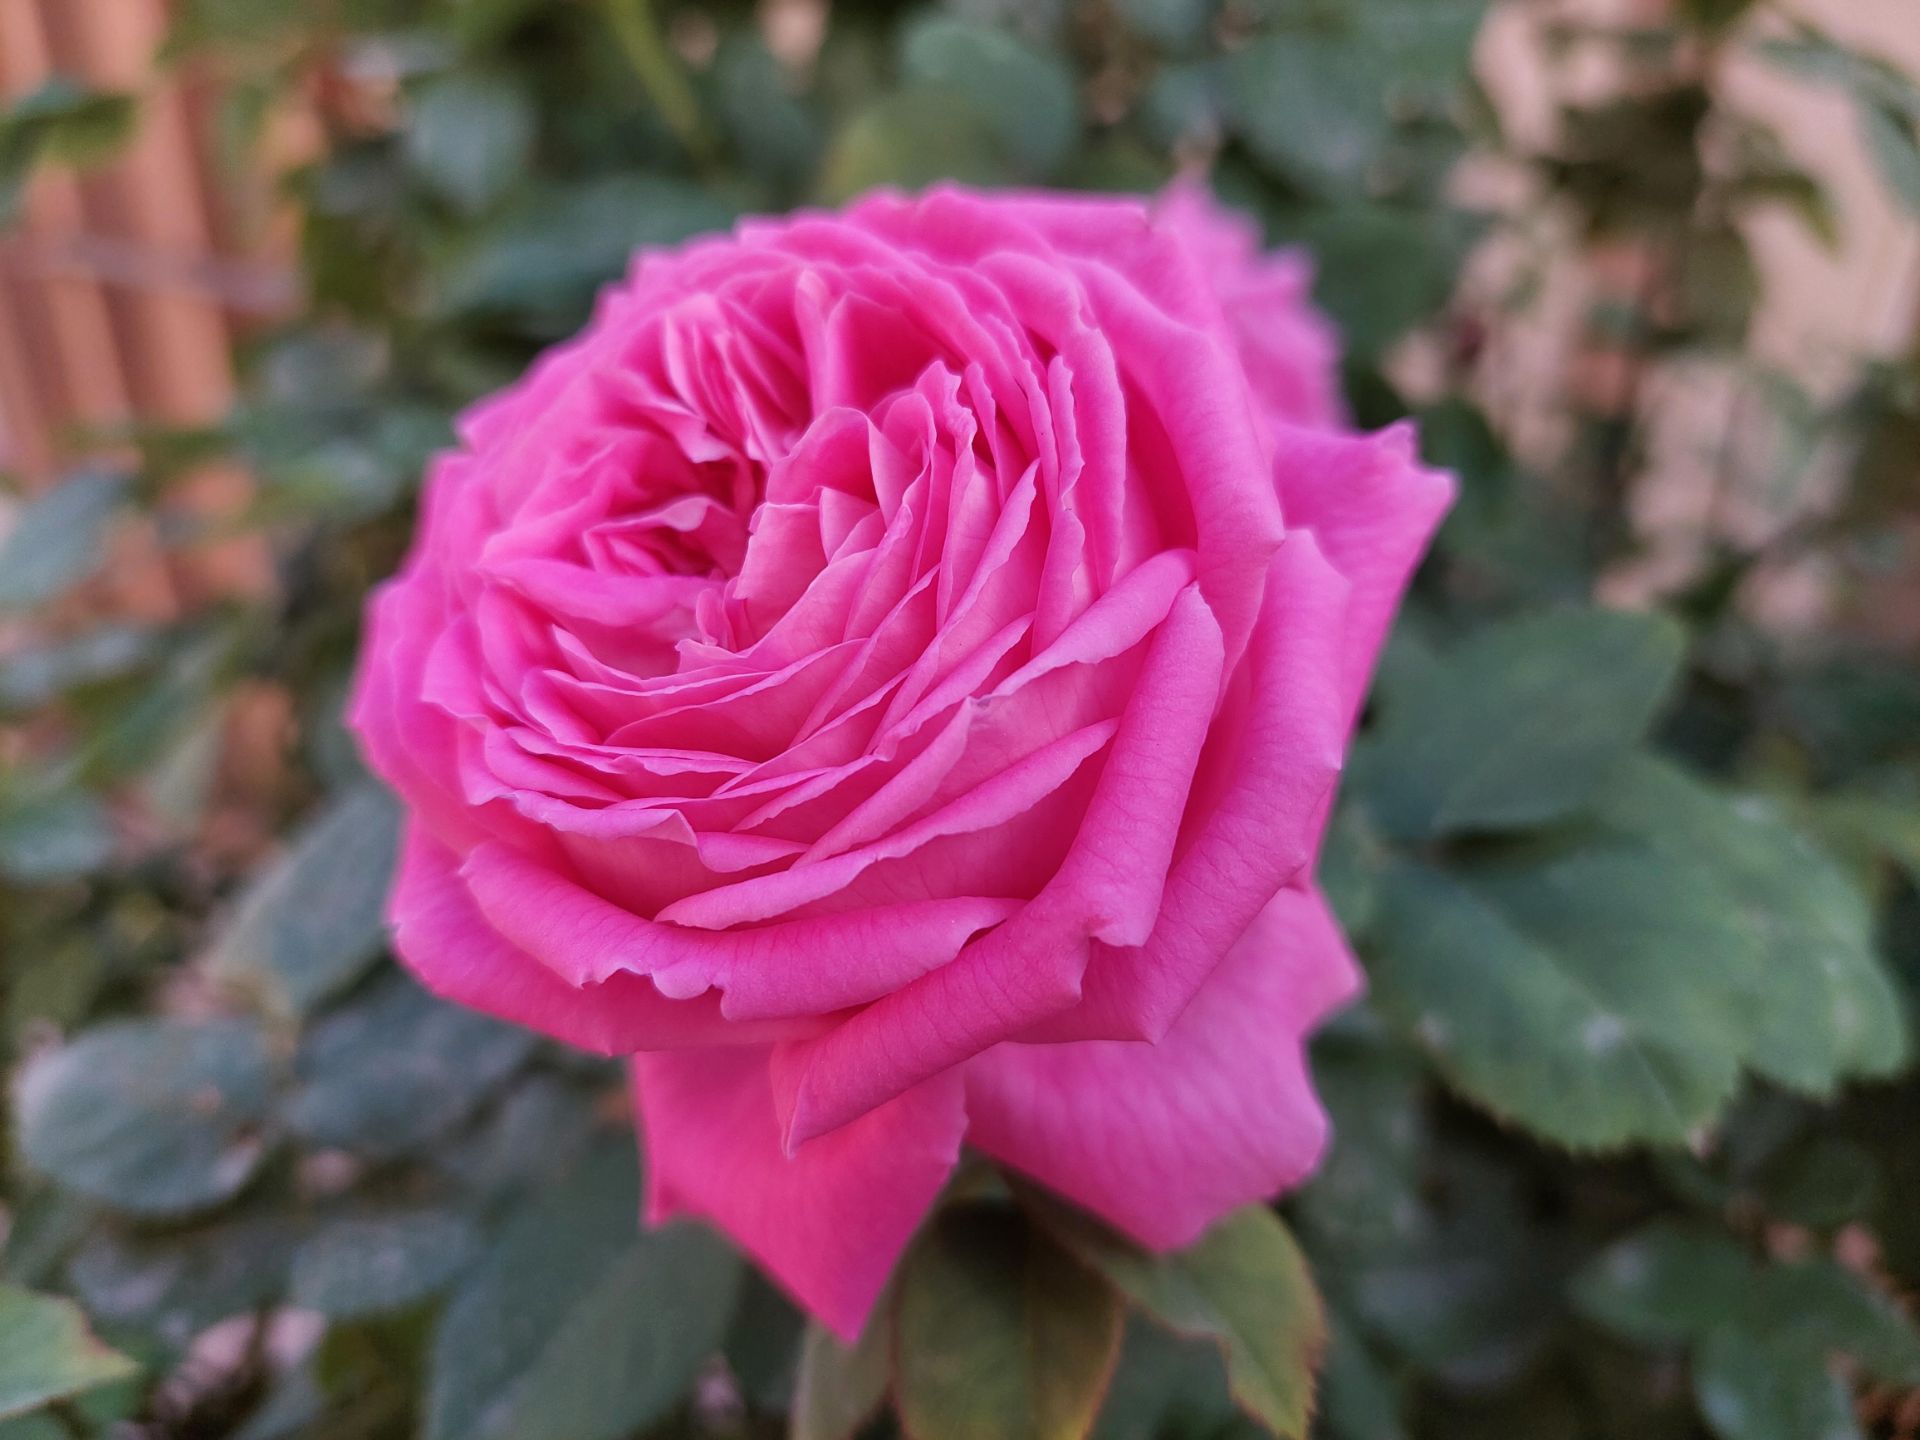 عکس نمونه دوربین واید گلکسی A52 در نور مناسب - عکسی از گل رز